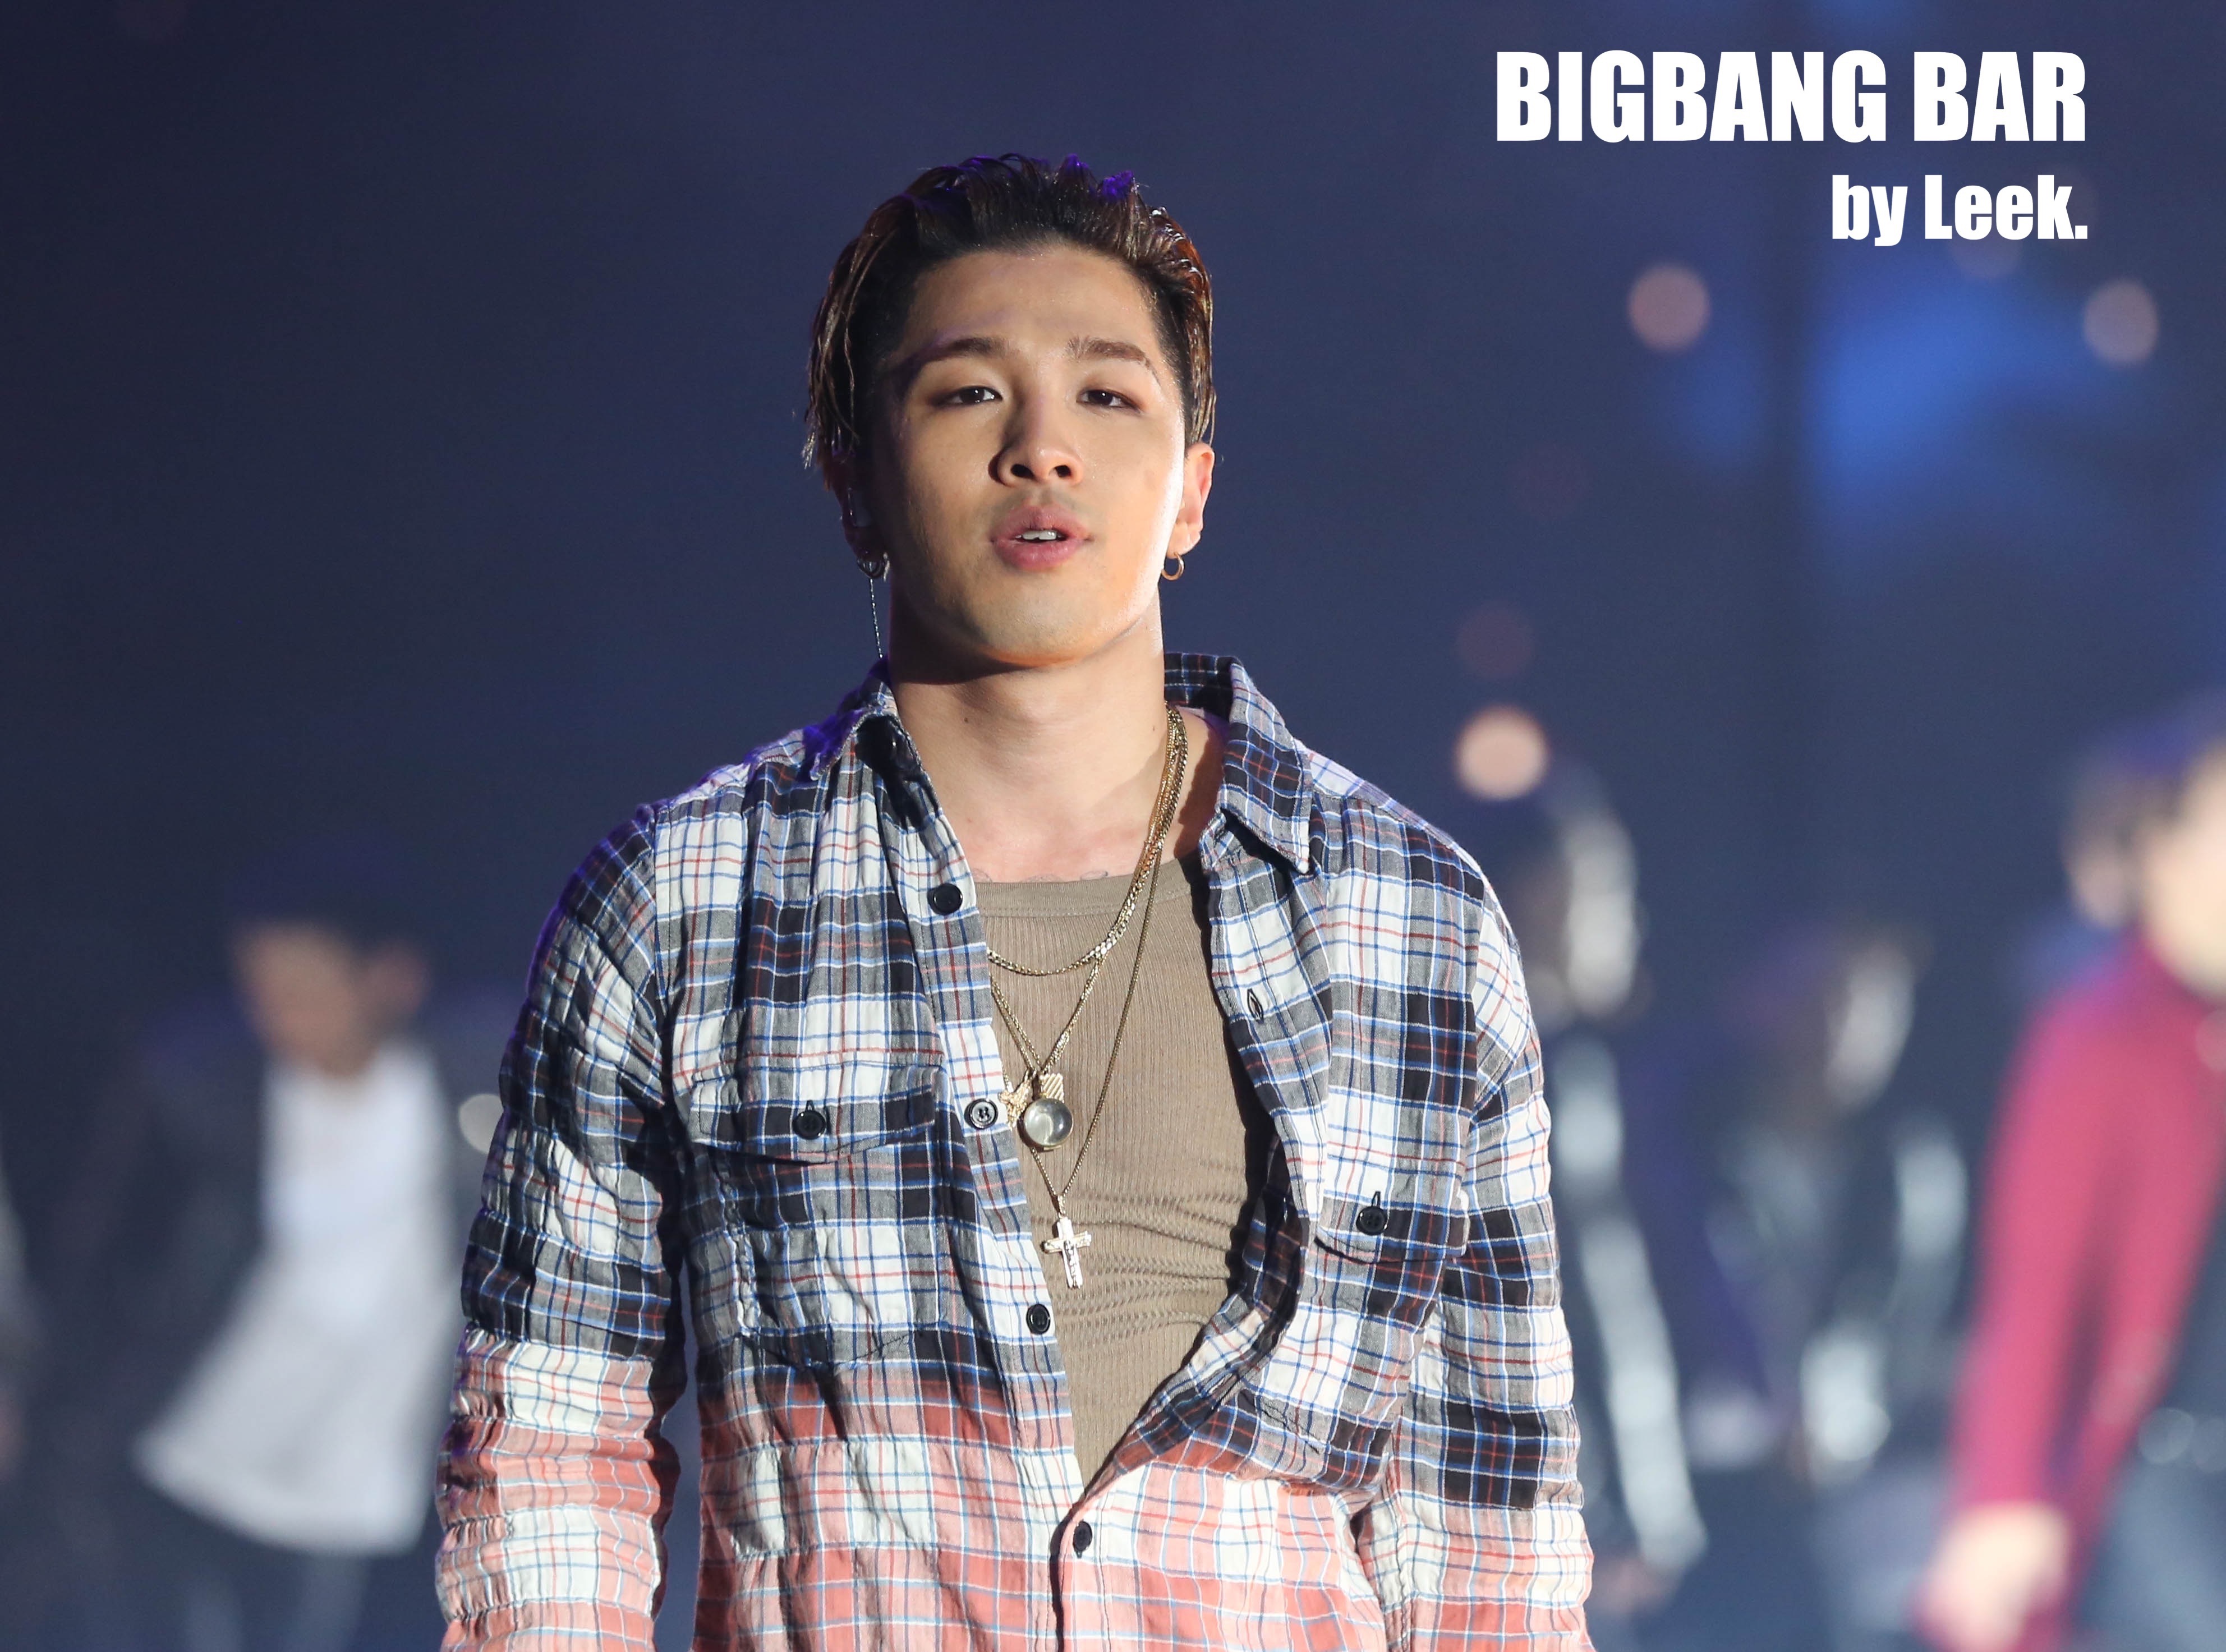 BIGBANG VIPevent Beijing 2016-01-01 By BIGBANGBar By Leek (28)